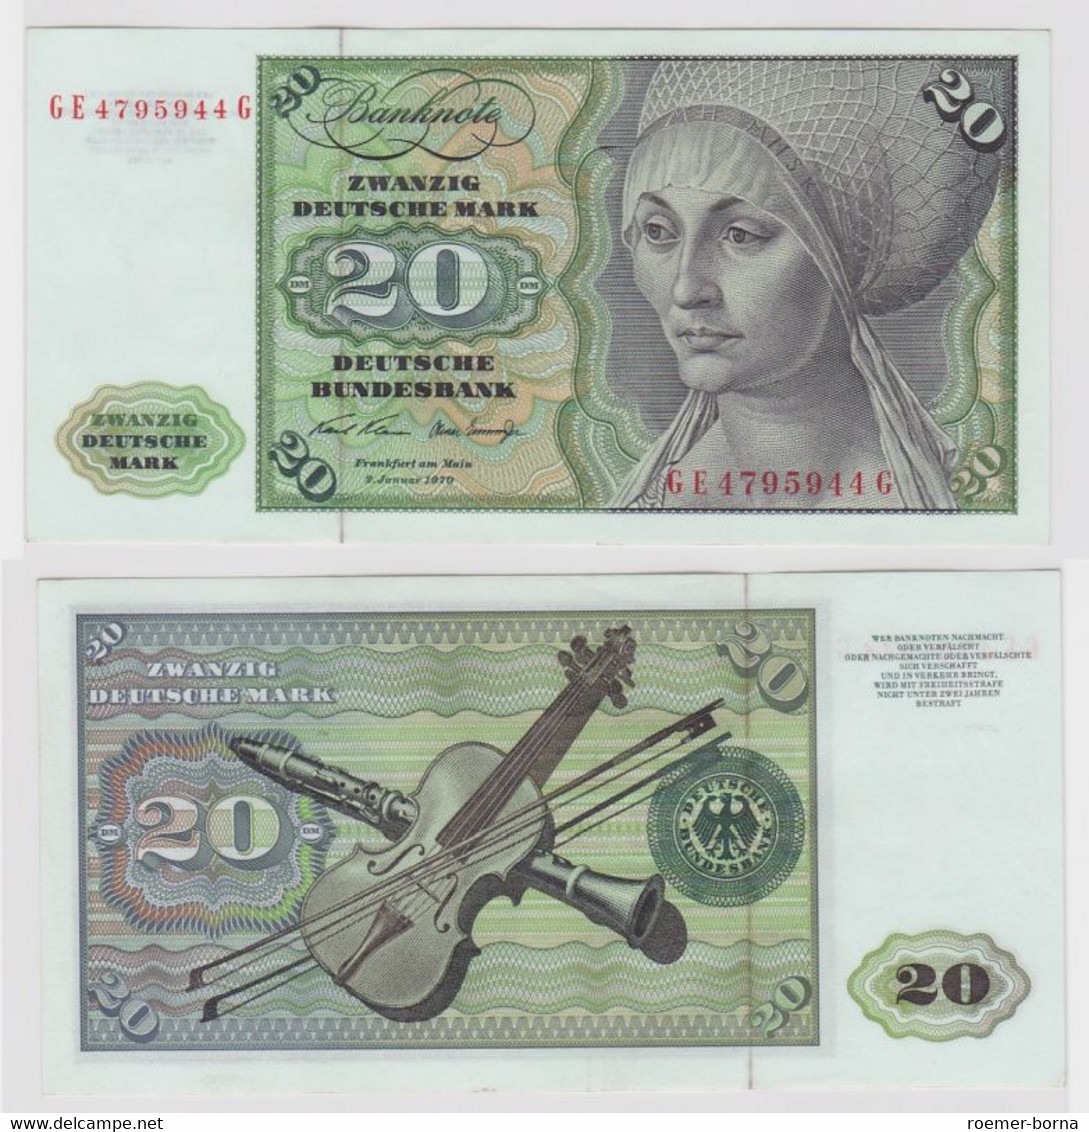 T136130 Banknote 20 DM Deutsche Mark Ro. 271b Schein 2.Jan. 1970 KN GE 4795944 G - 20 Deutsche Mark